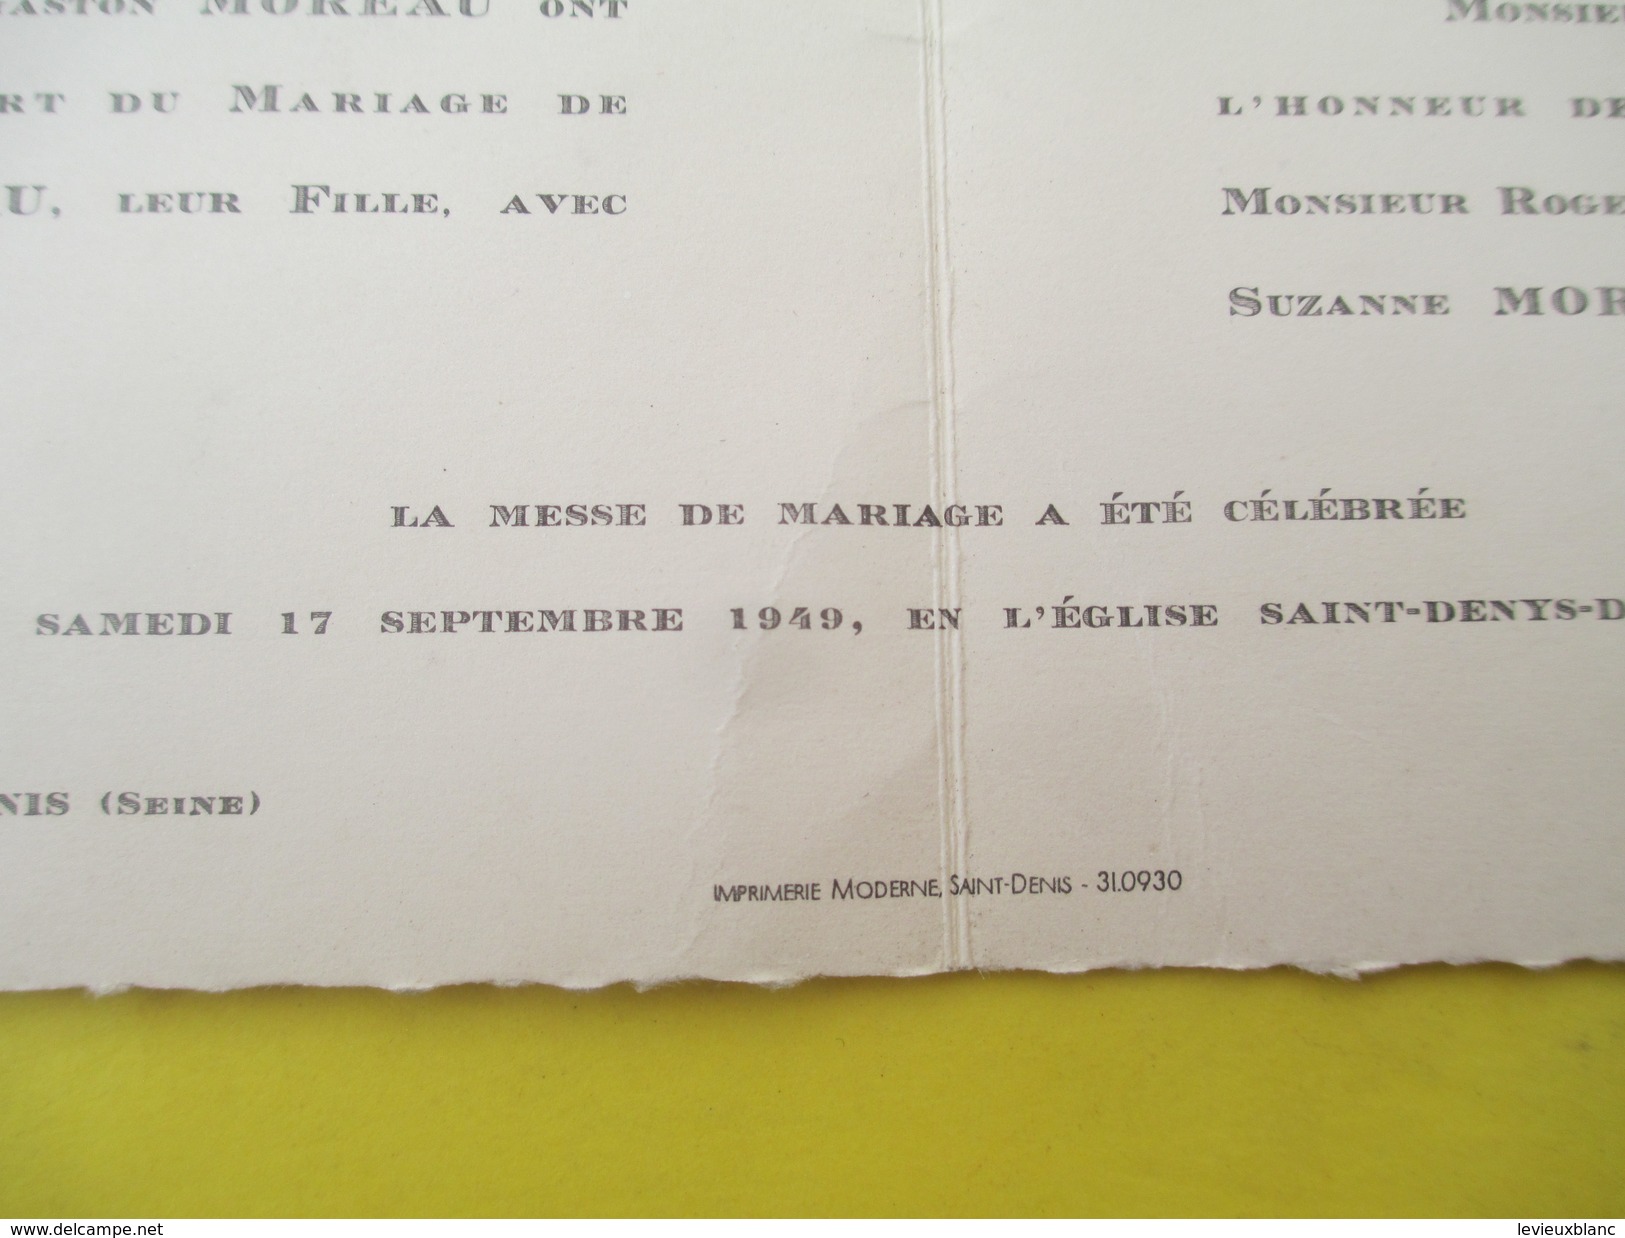 Faire-part De Mariage/Suzanne Moreau - Roger Gebel/Eglise Saint Denys De L'Estrée/Saint Denis/Seine/Pantin/1949    FPM37 - Mariage